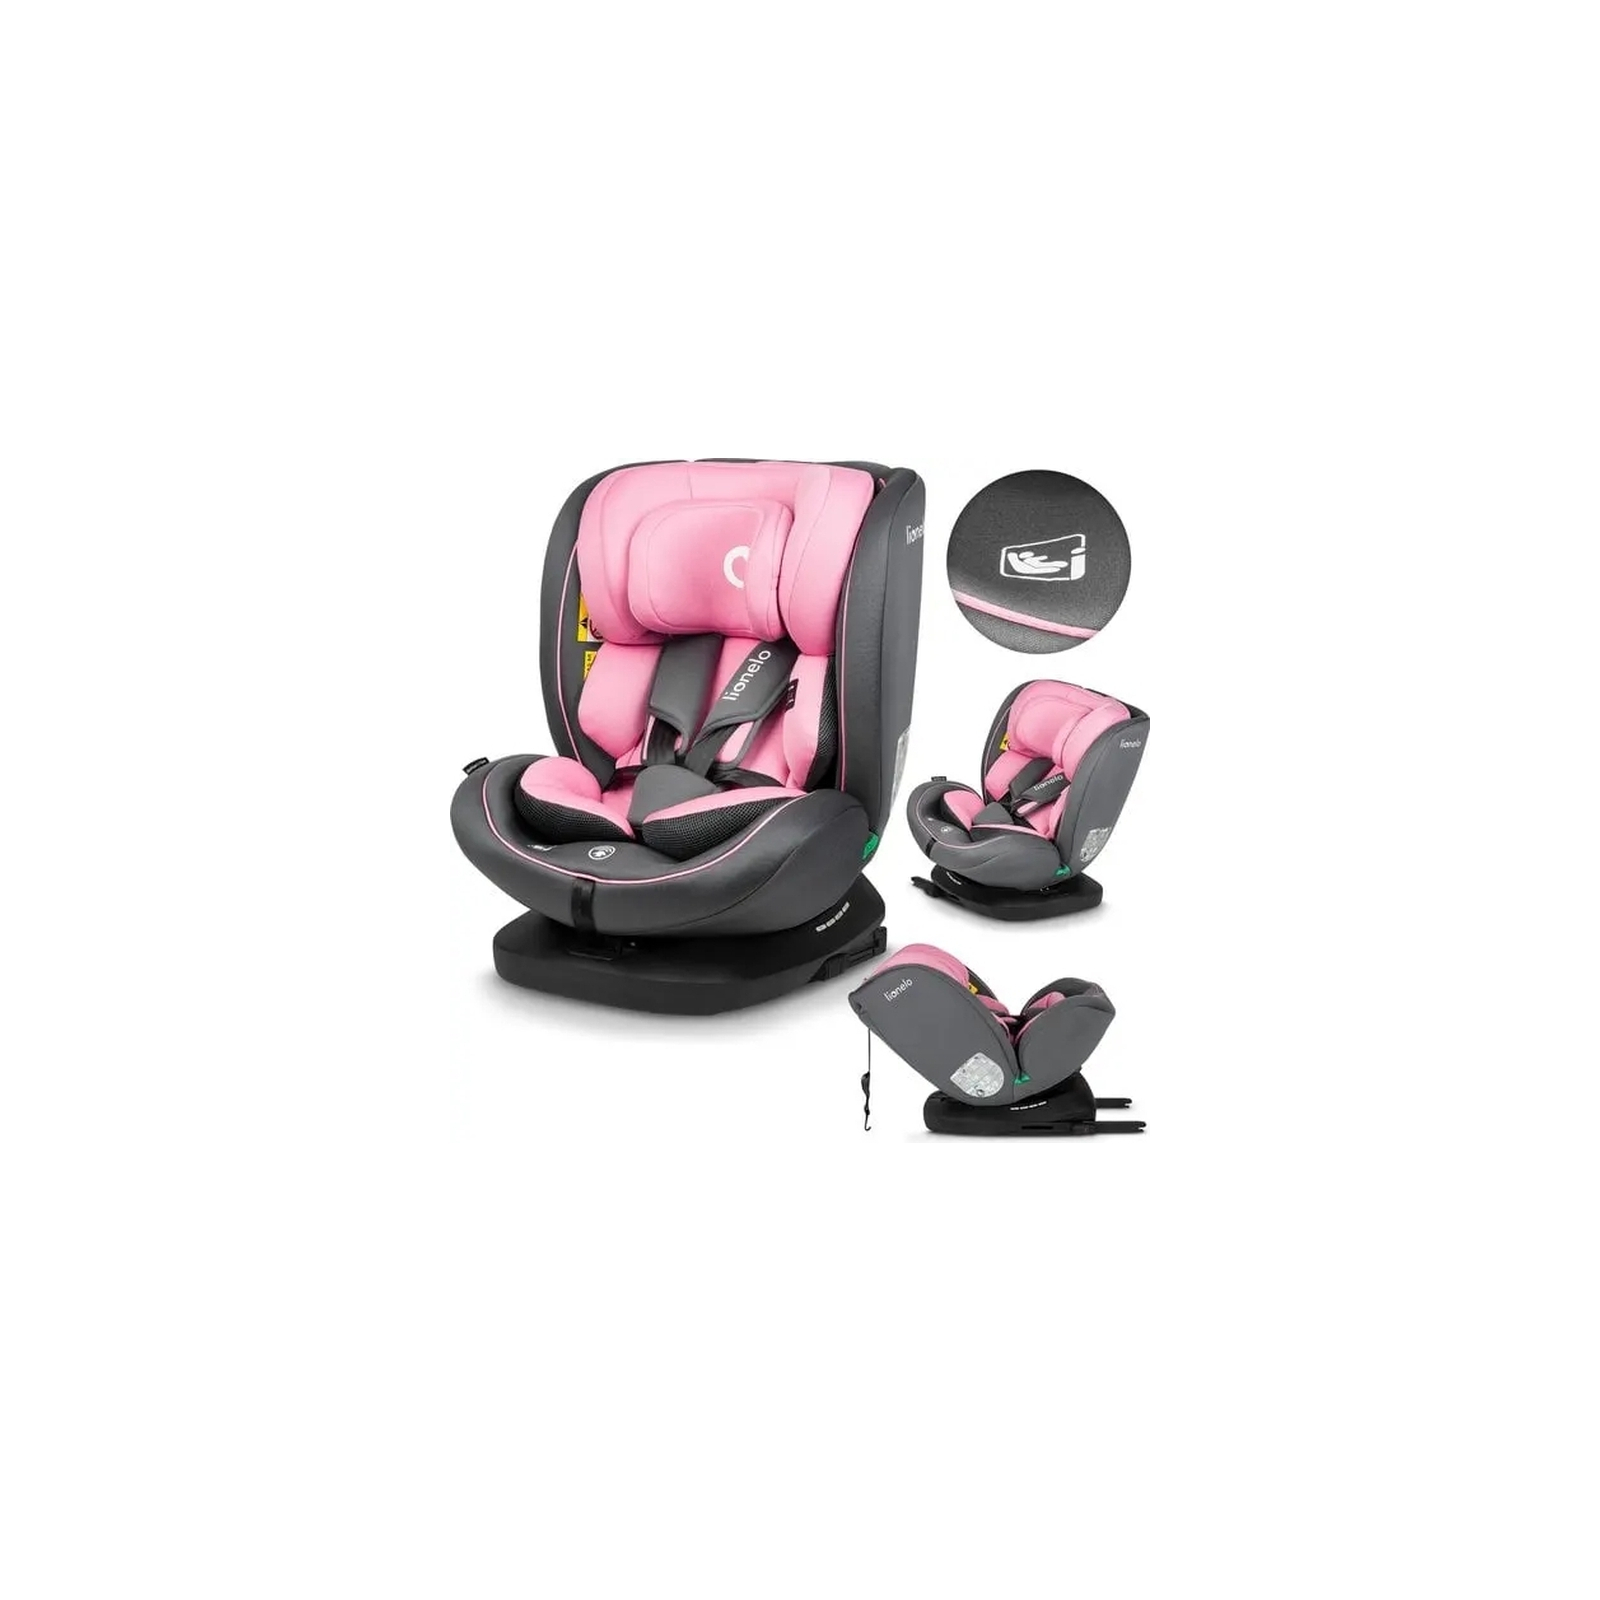 Автокресло Lionelo Bastiaan i-Size Pink Baby, розовое (LO-BASTIAAN I-SIZE PINK BABY) изображение 6